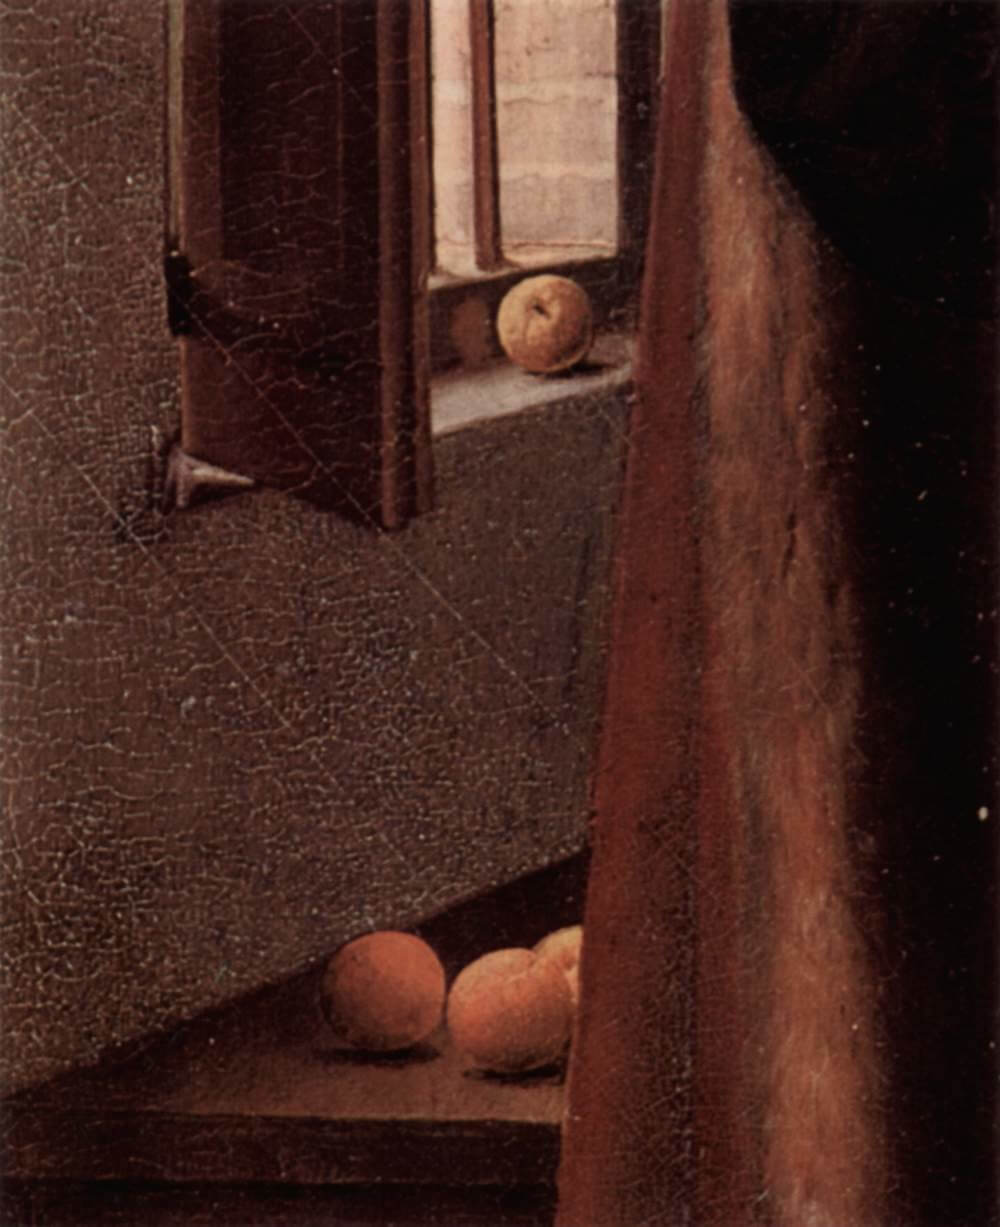 Oranges painted by Jan van Eyck